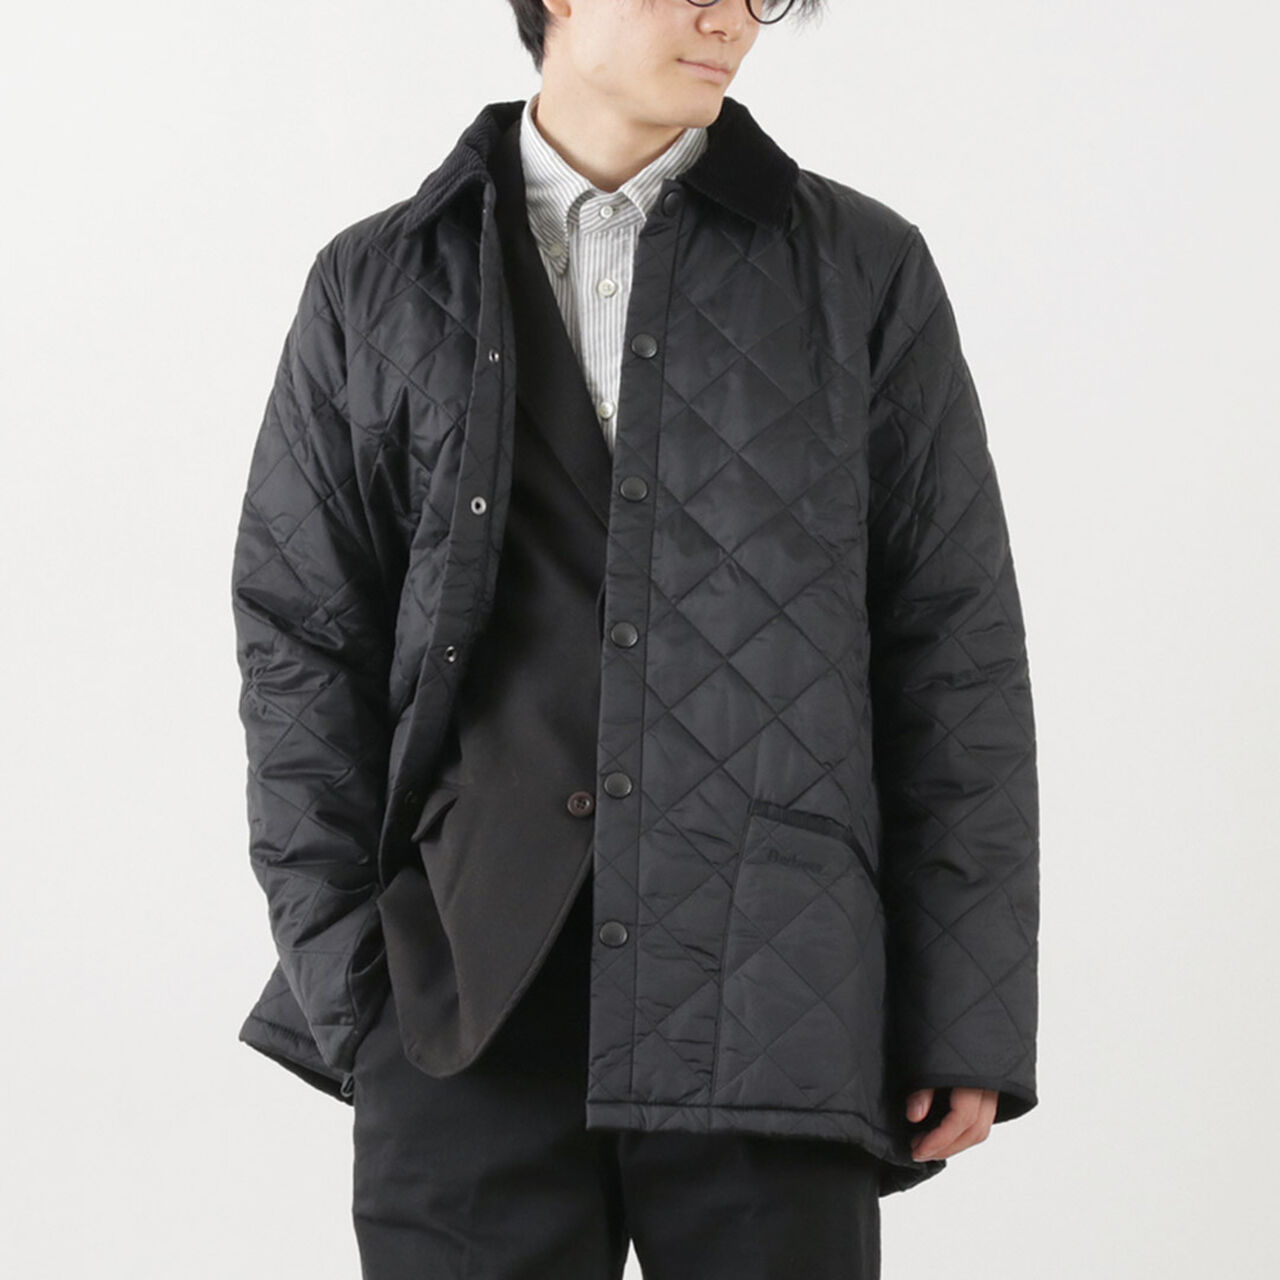 Liddedale SL nylon quilt jacket,Black, large image number 0